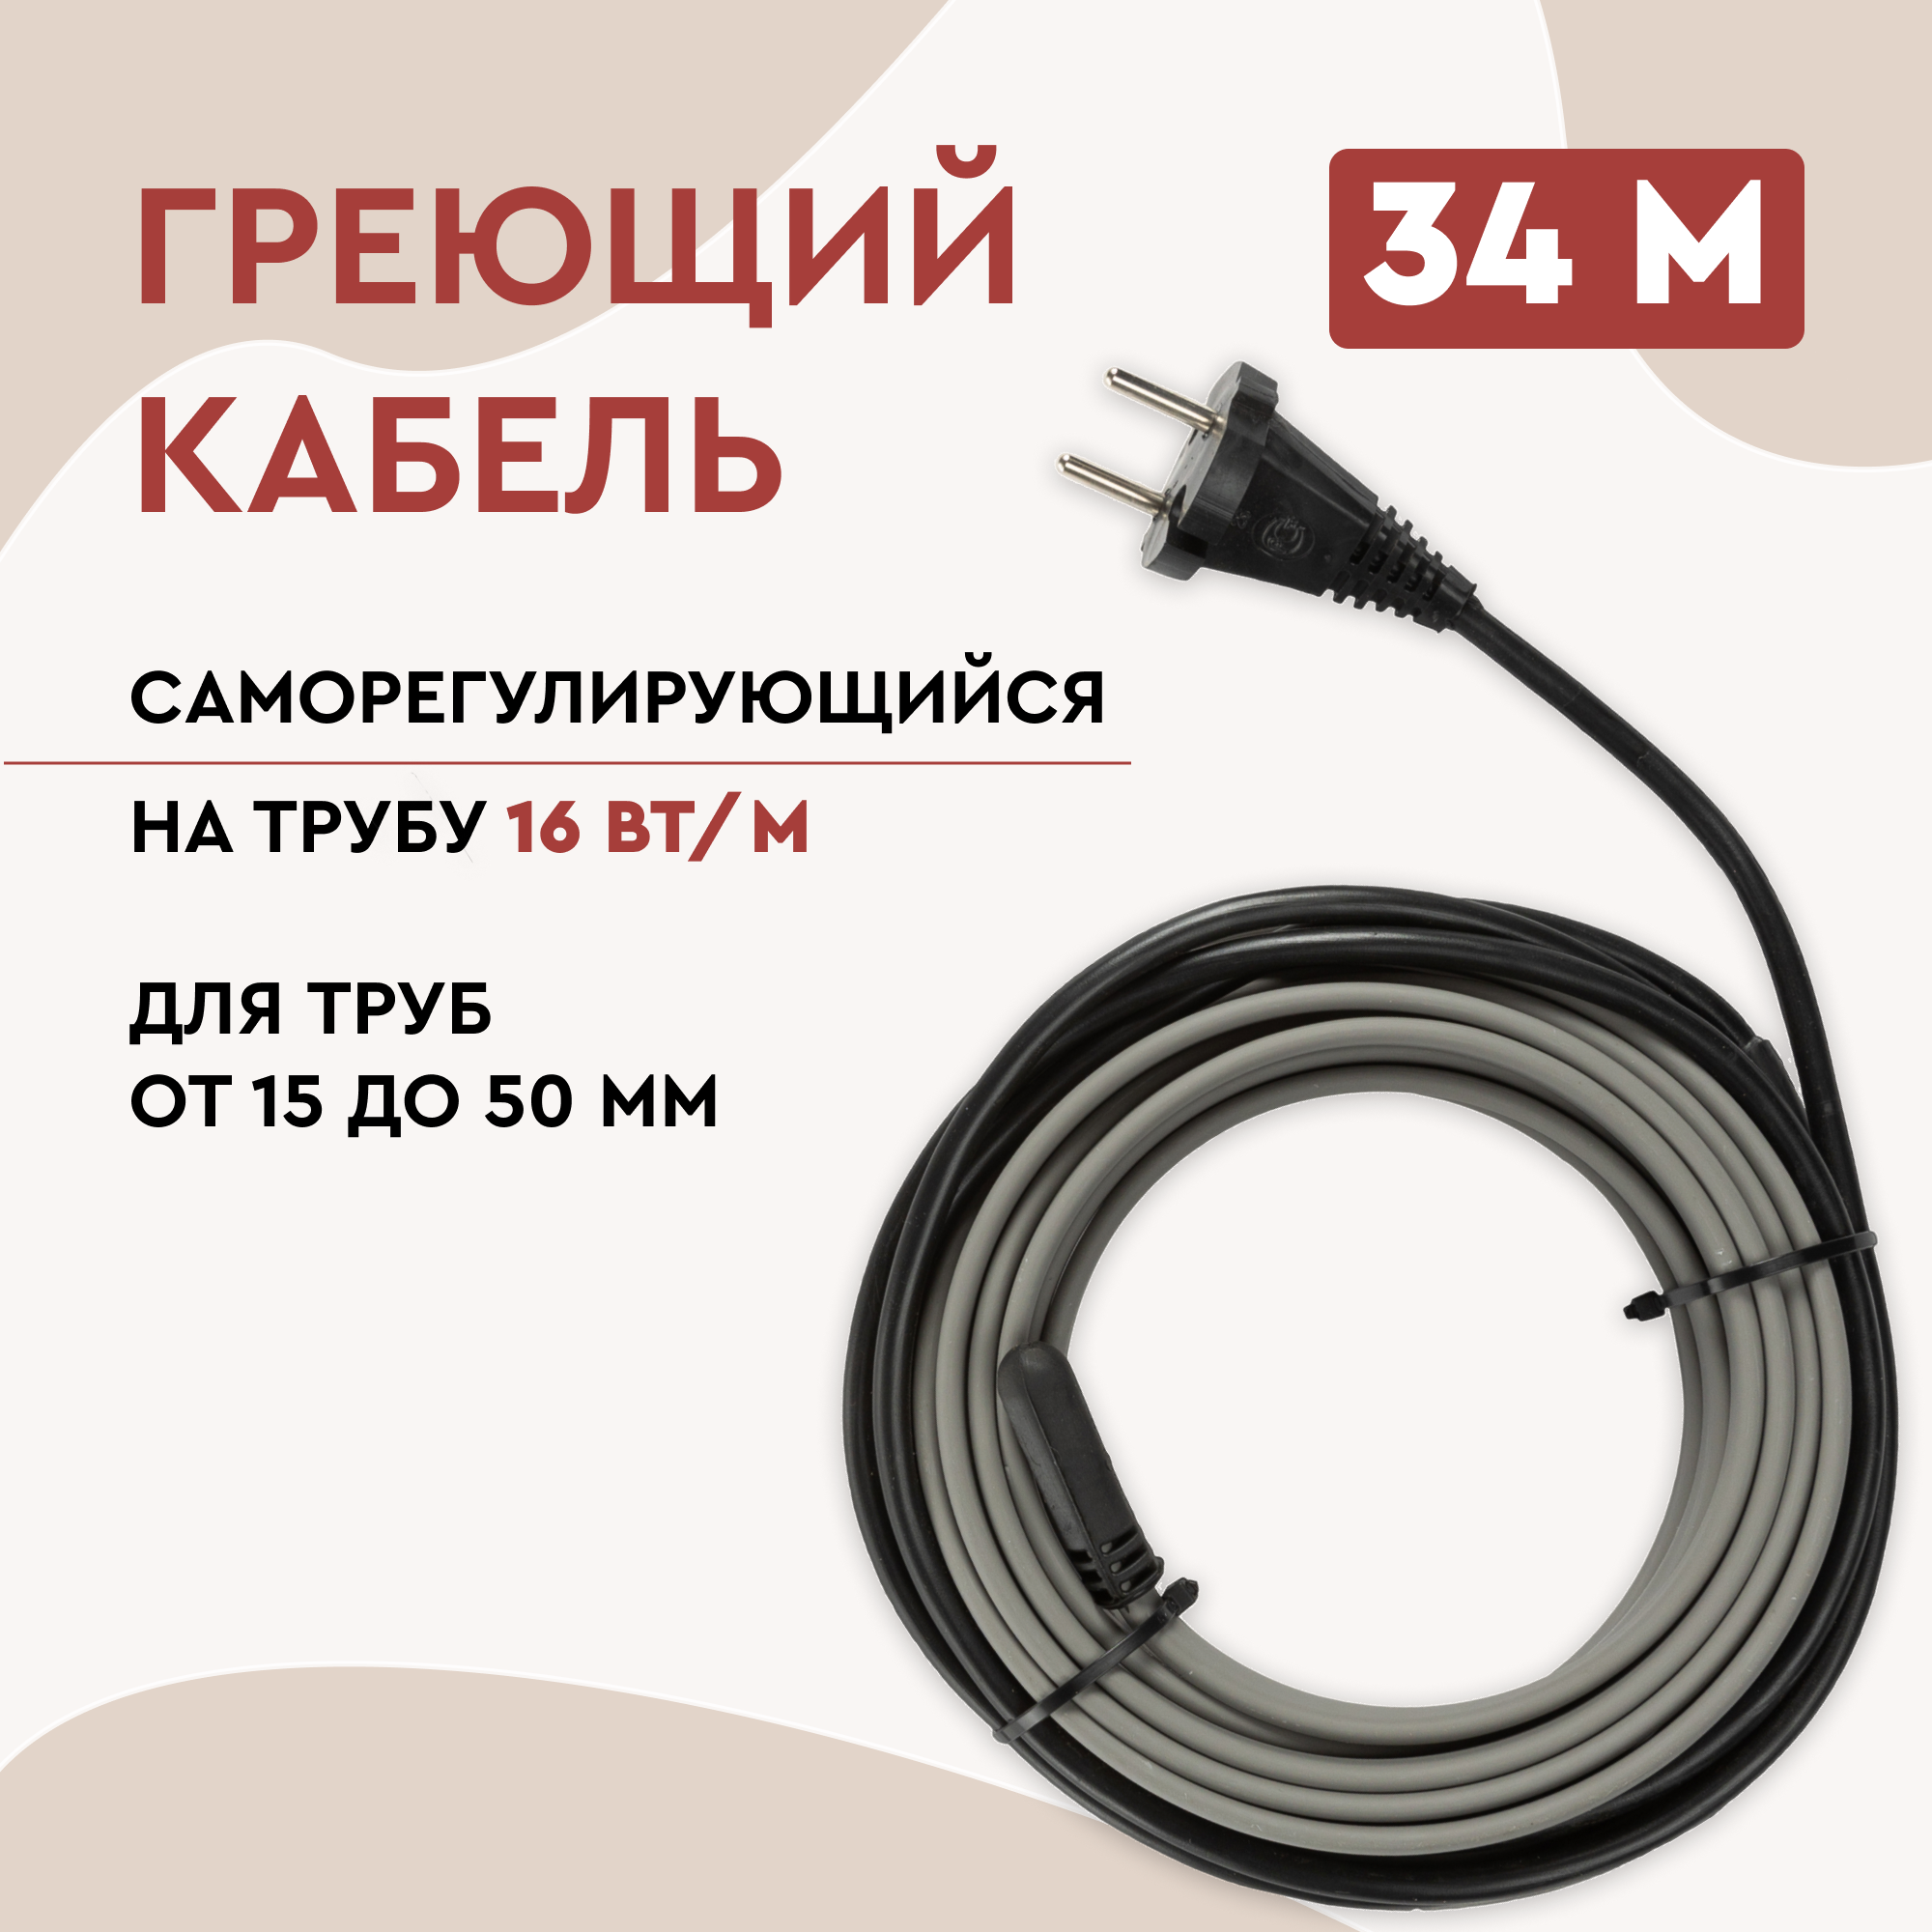 Греющий кабель Lite на трубу 34м 544Вт